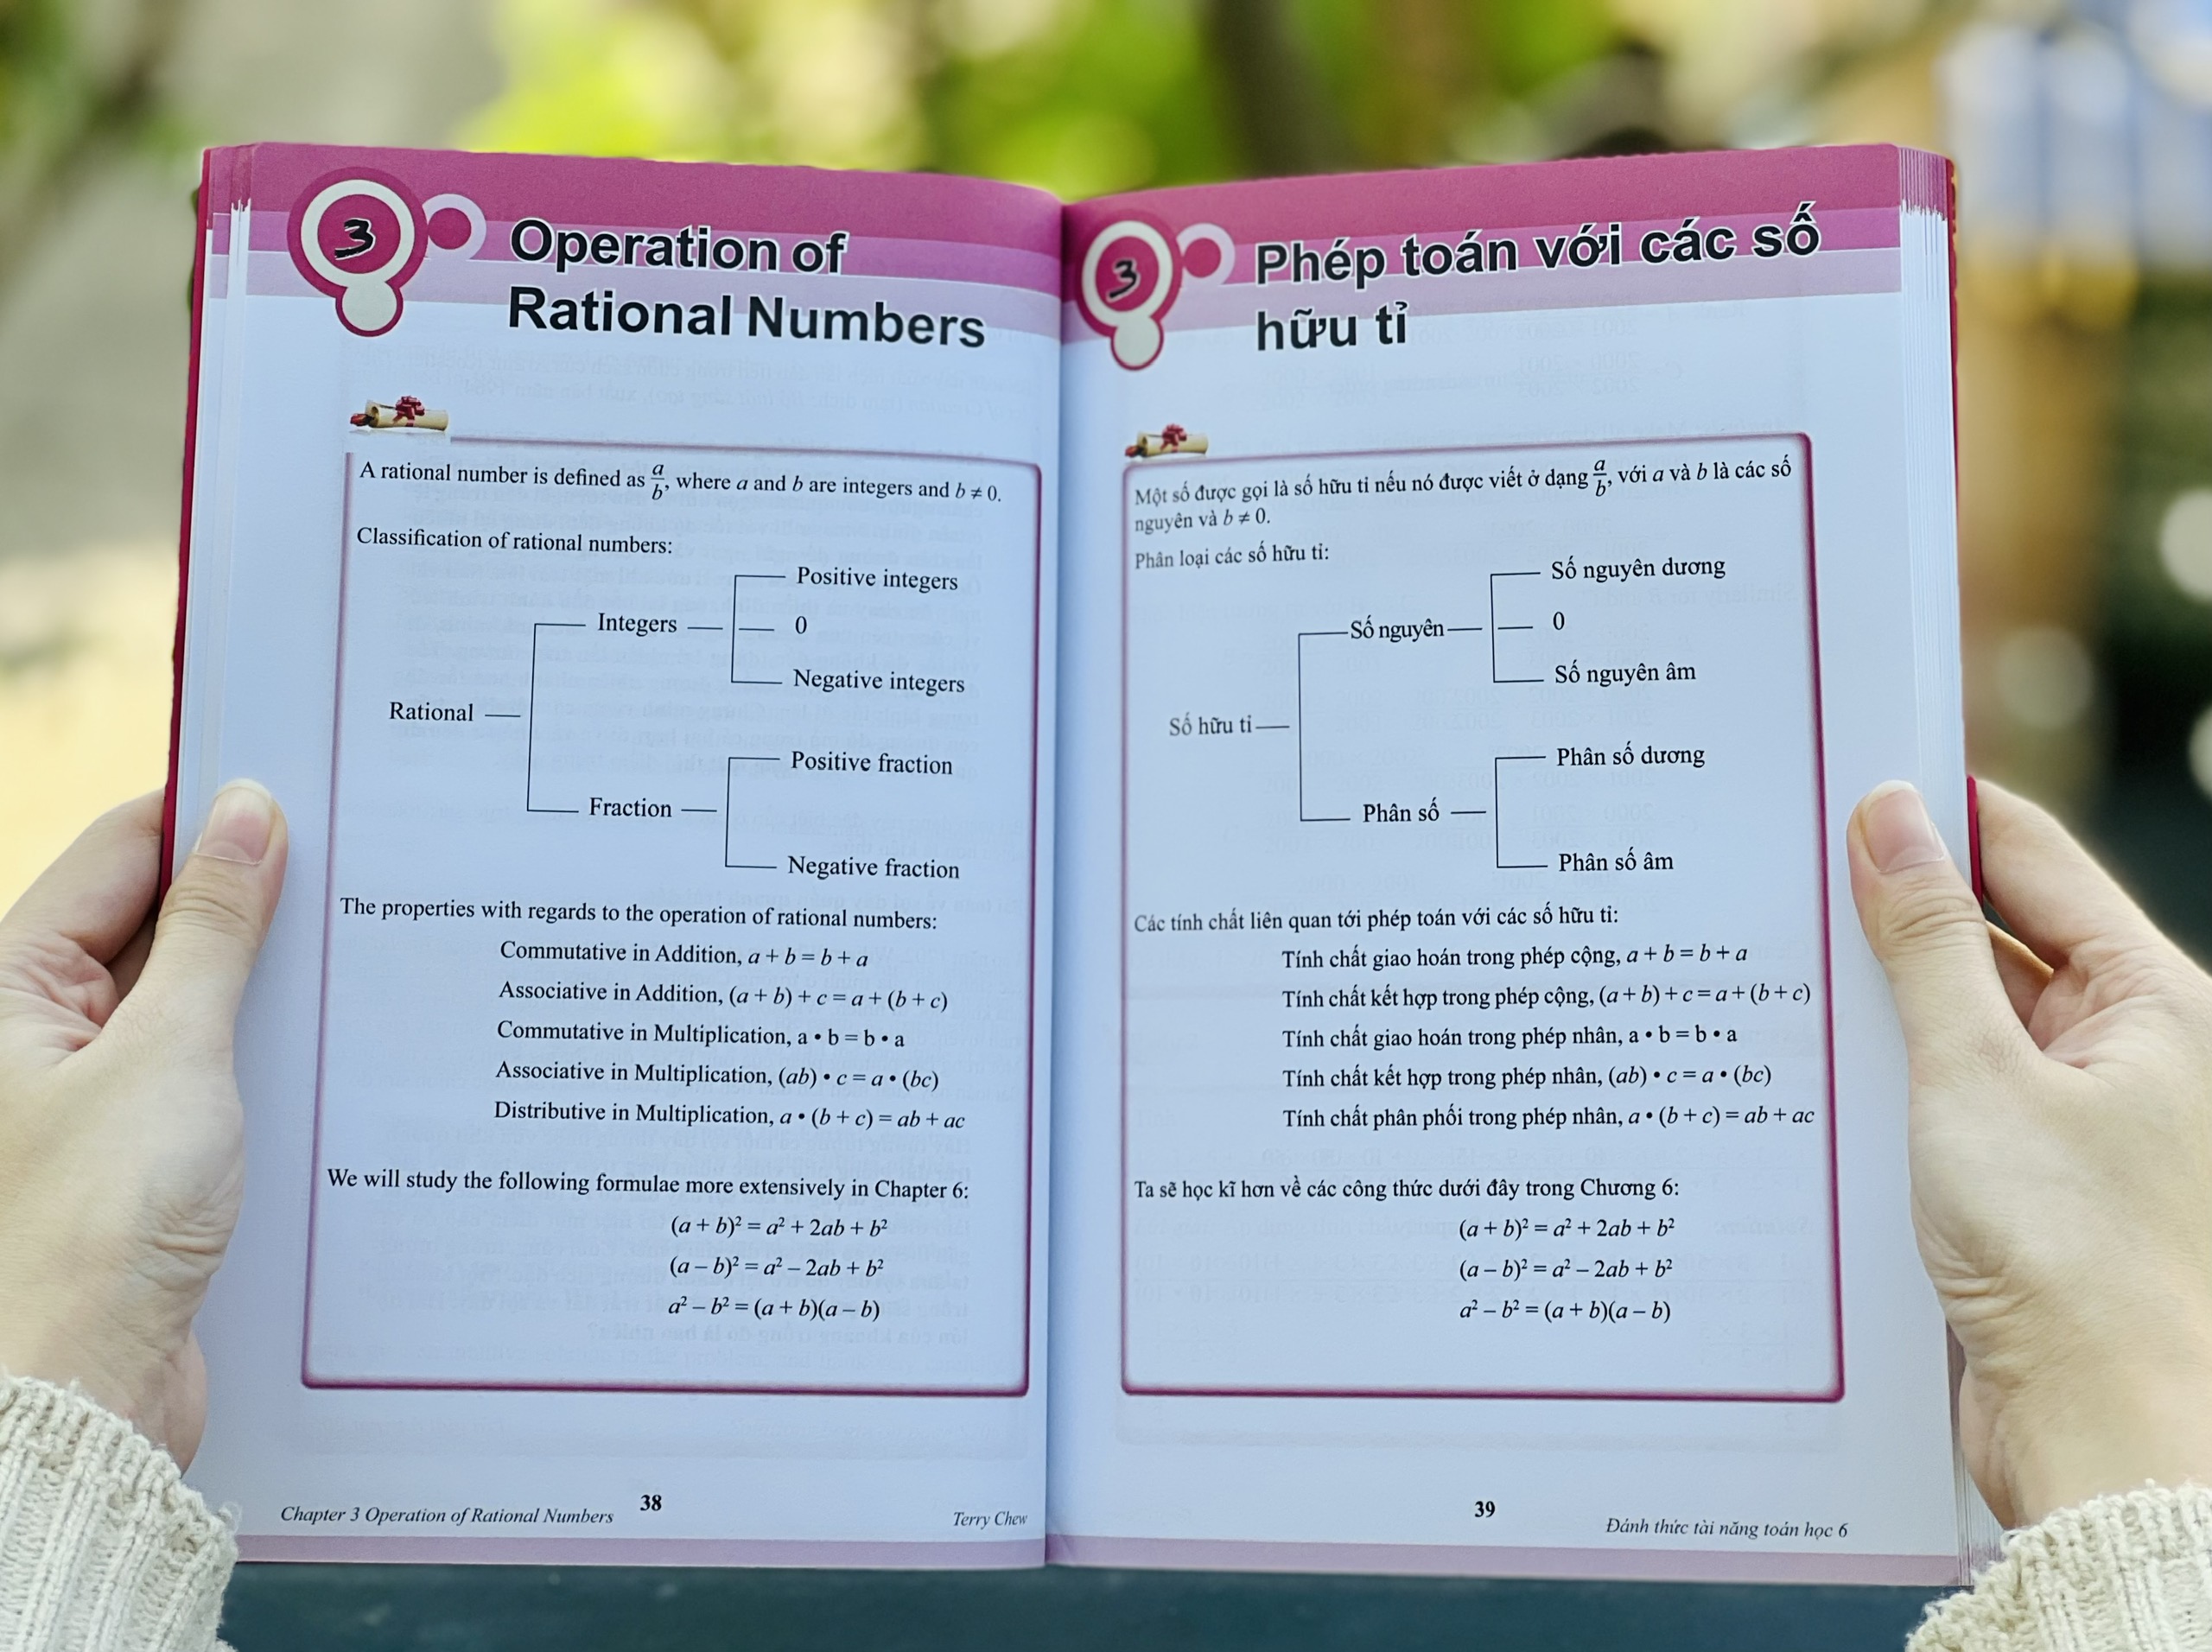 Hình ảnh Combo sách Đánh thức tài năng toán học 6 và 50 thủ thuật toán ( 2 cuốn ), sách kiến thức toán học lớp 6 lớp 7 - Hiệu sách Genbooks